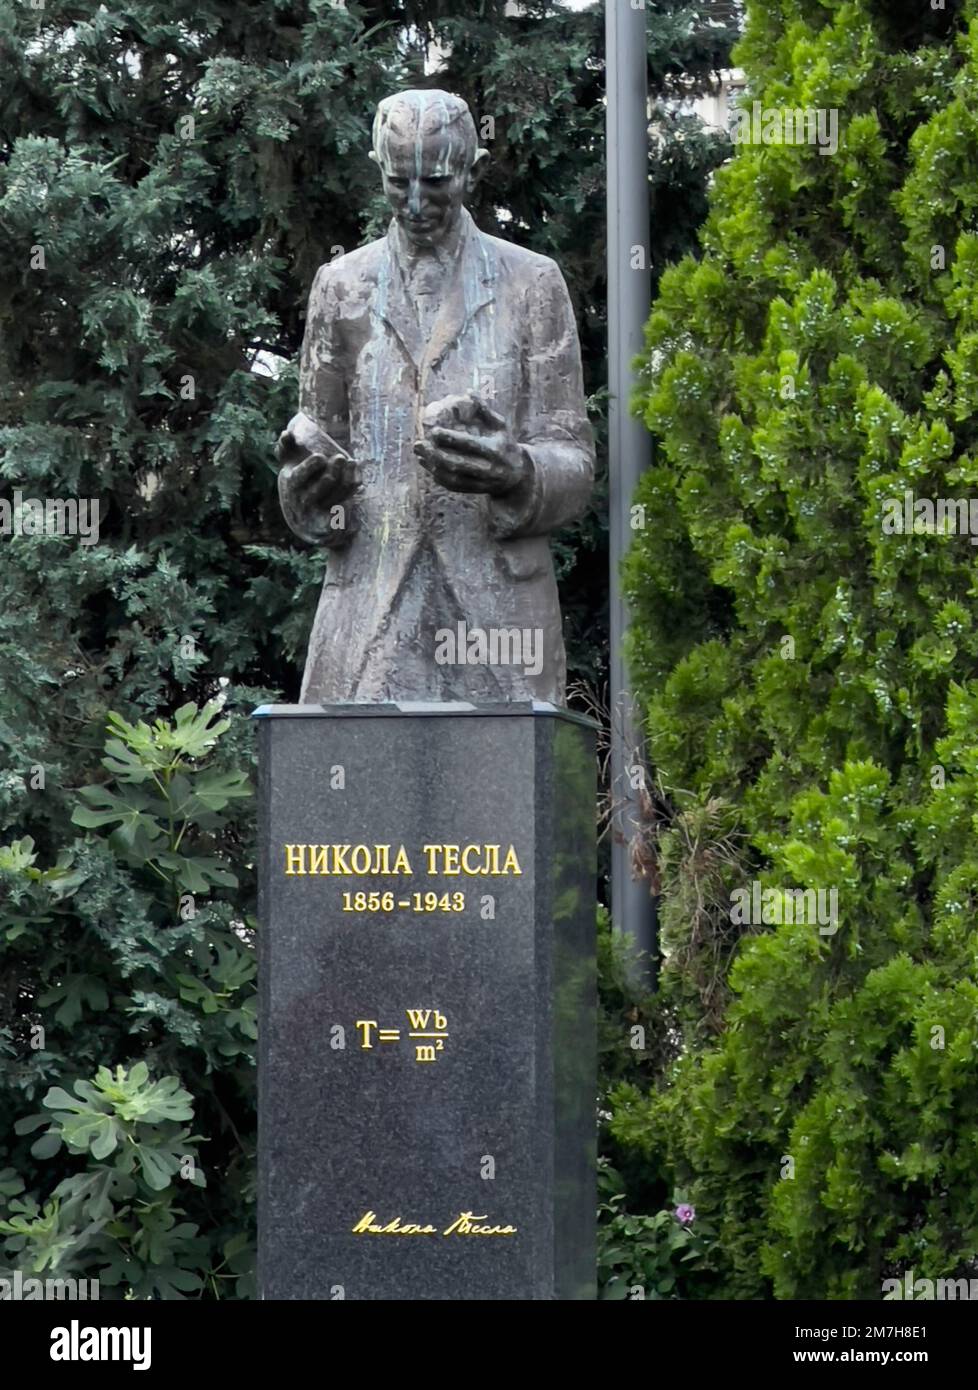 Statua in pietra di granito di Tesla in un parco all'aperto a Belgrado, Serbia. Nicola Tesla, ingegnere e inventore, visse dal 1856 al 7 gennaio 1943. Foto Stock